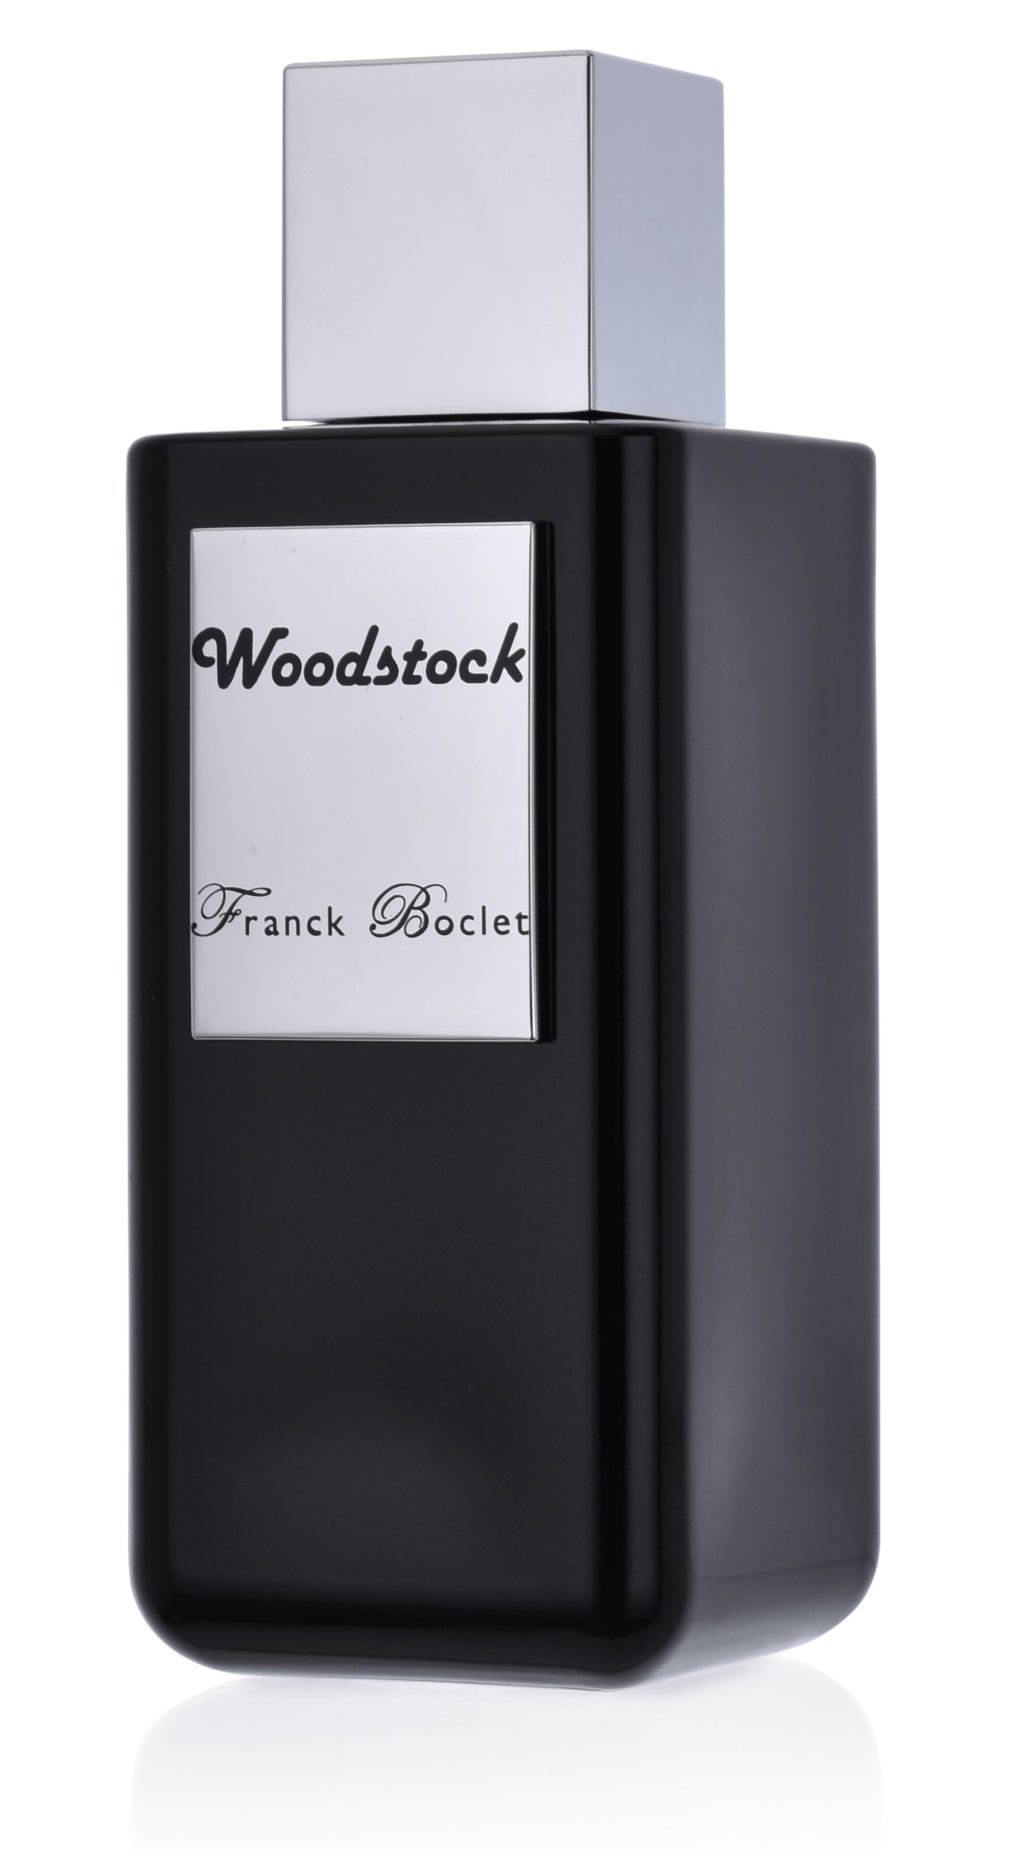 Franck Boclet Woodstock 5 ml Extrait de Parfum Abfüllung 